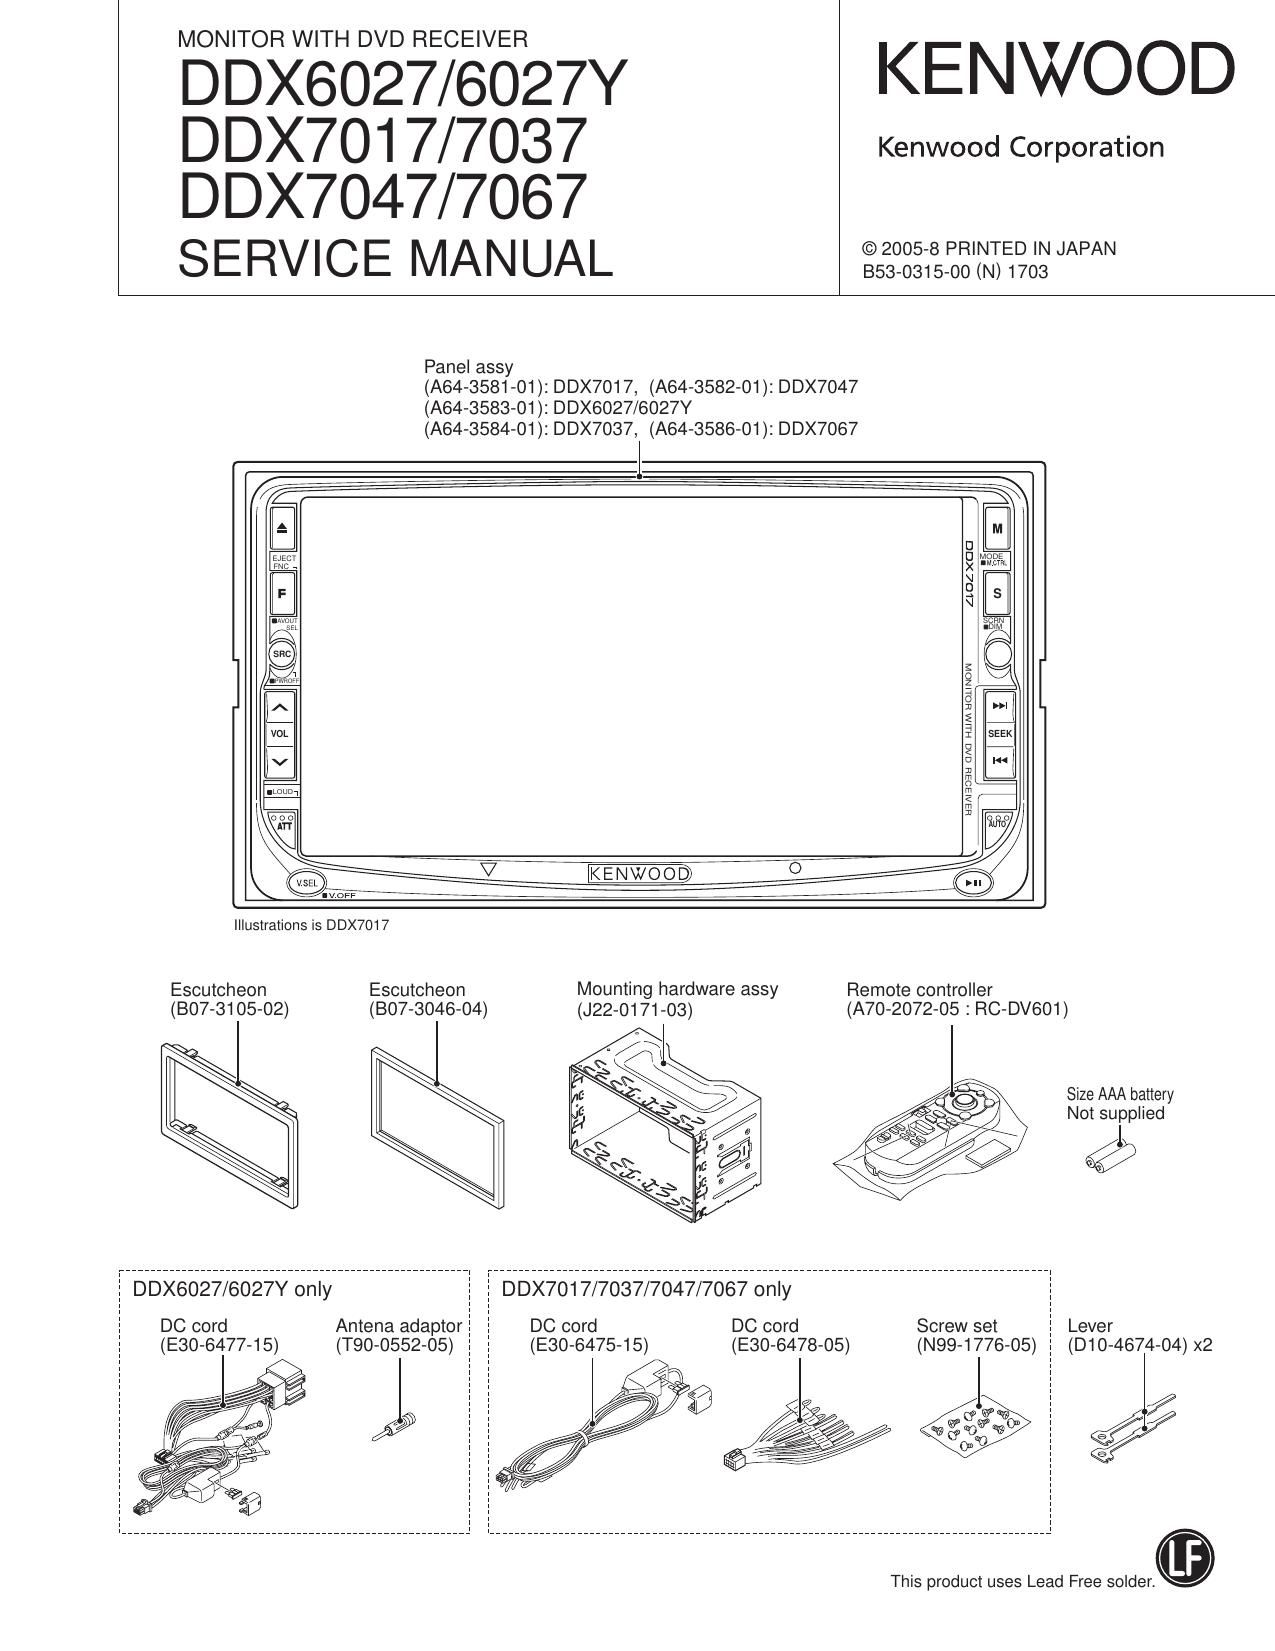 Kenwood DDX 6027 Y HU Service Manual